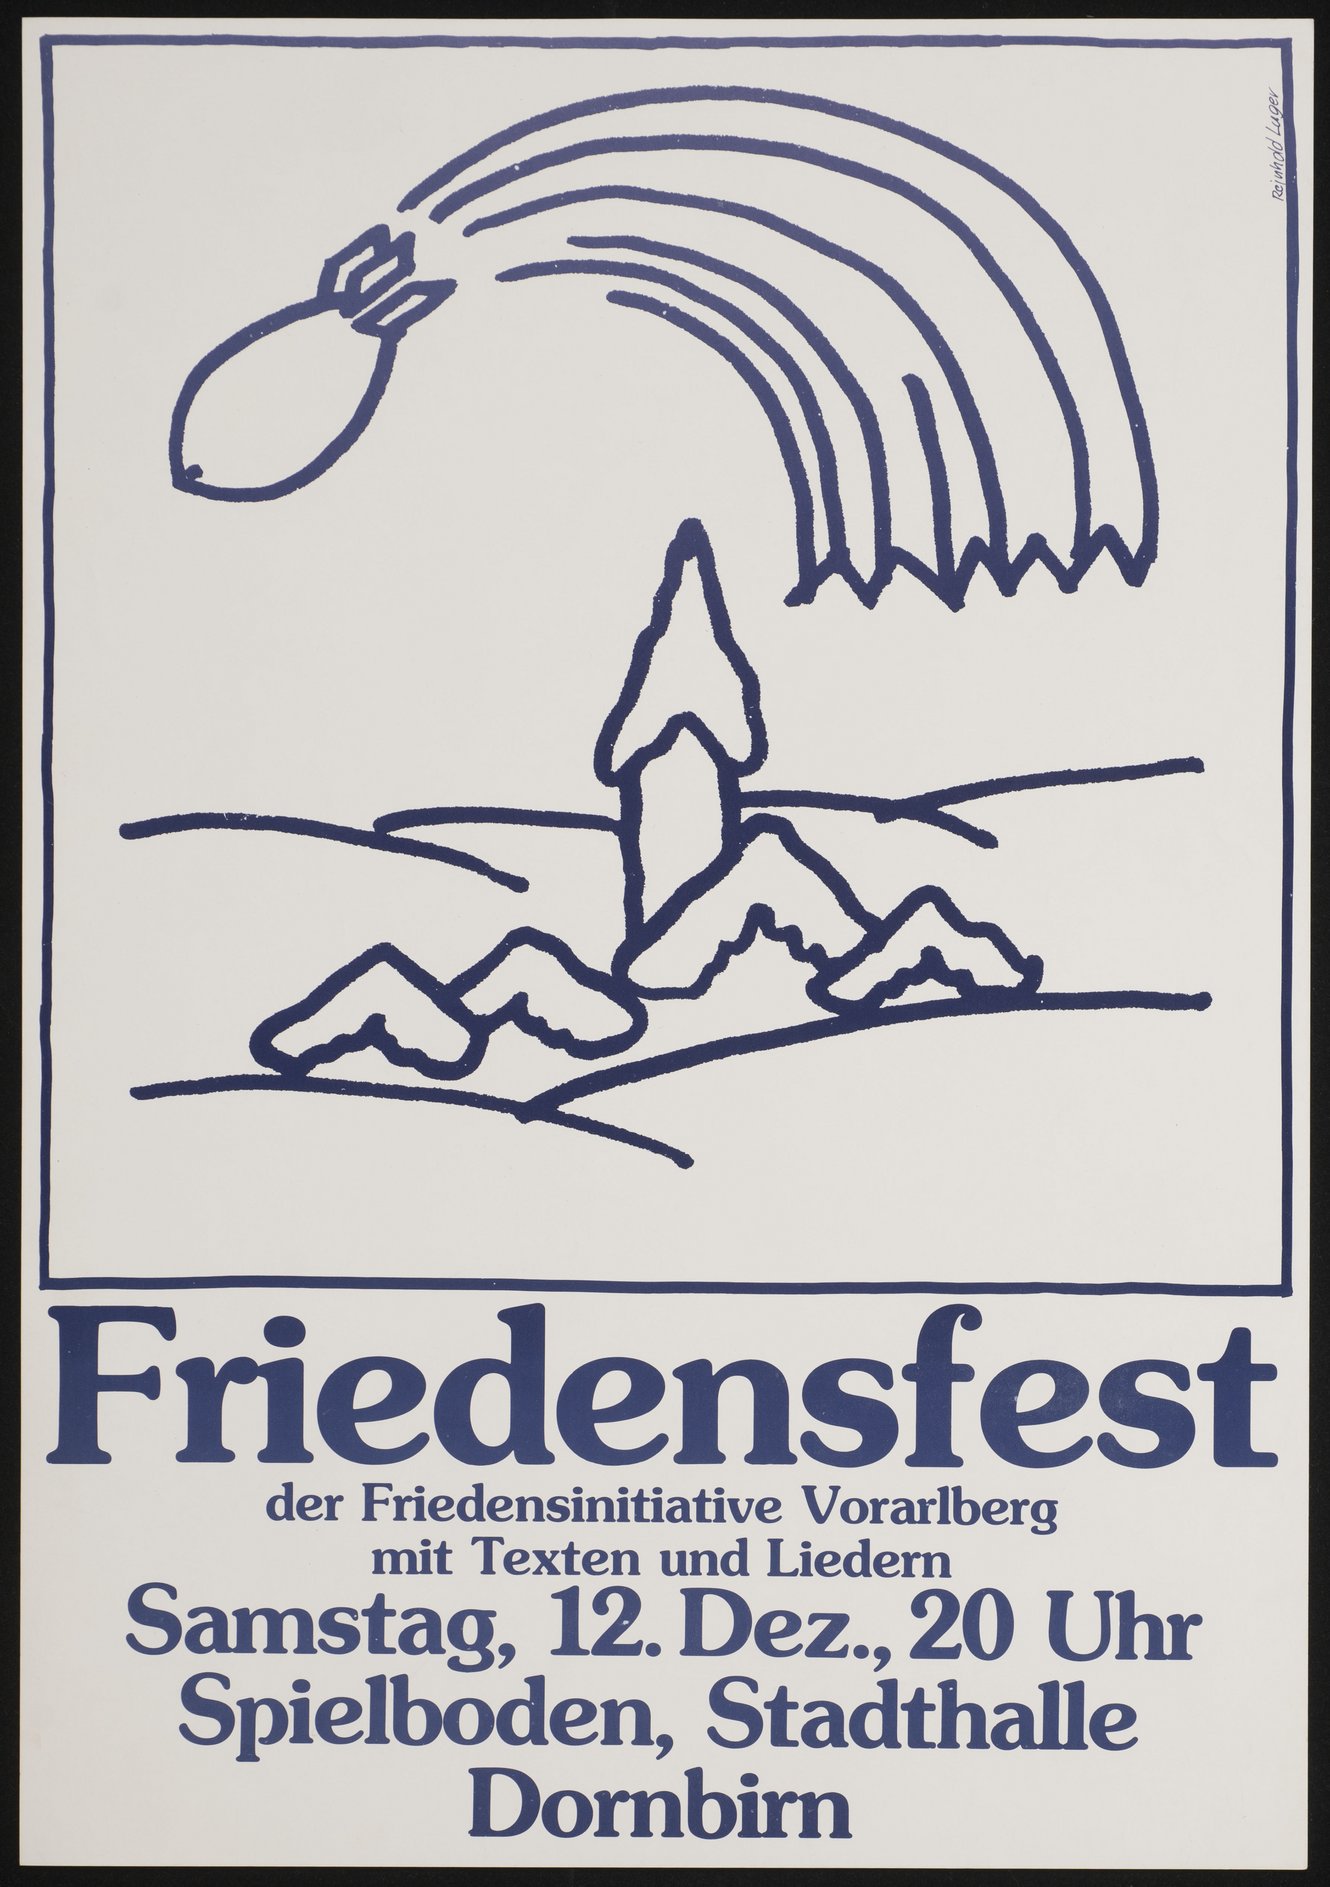 Friedensfest der Friedensinitiative Vorarlberg 1982, Plakatgestaltung Reinhold Luger